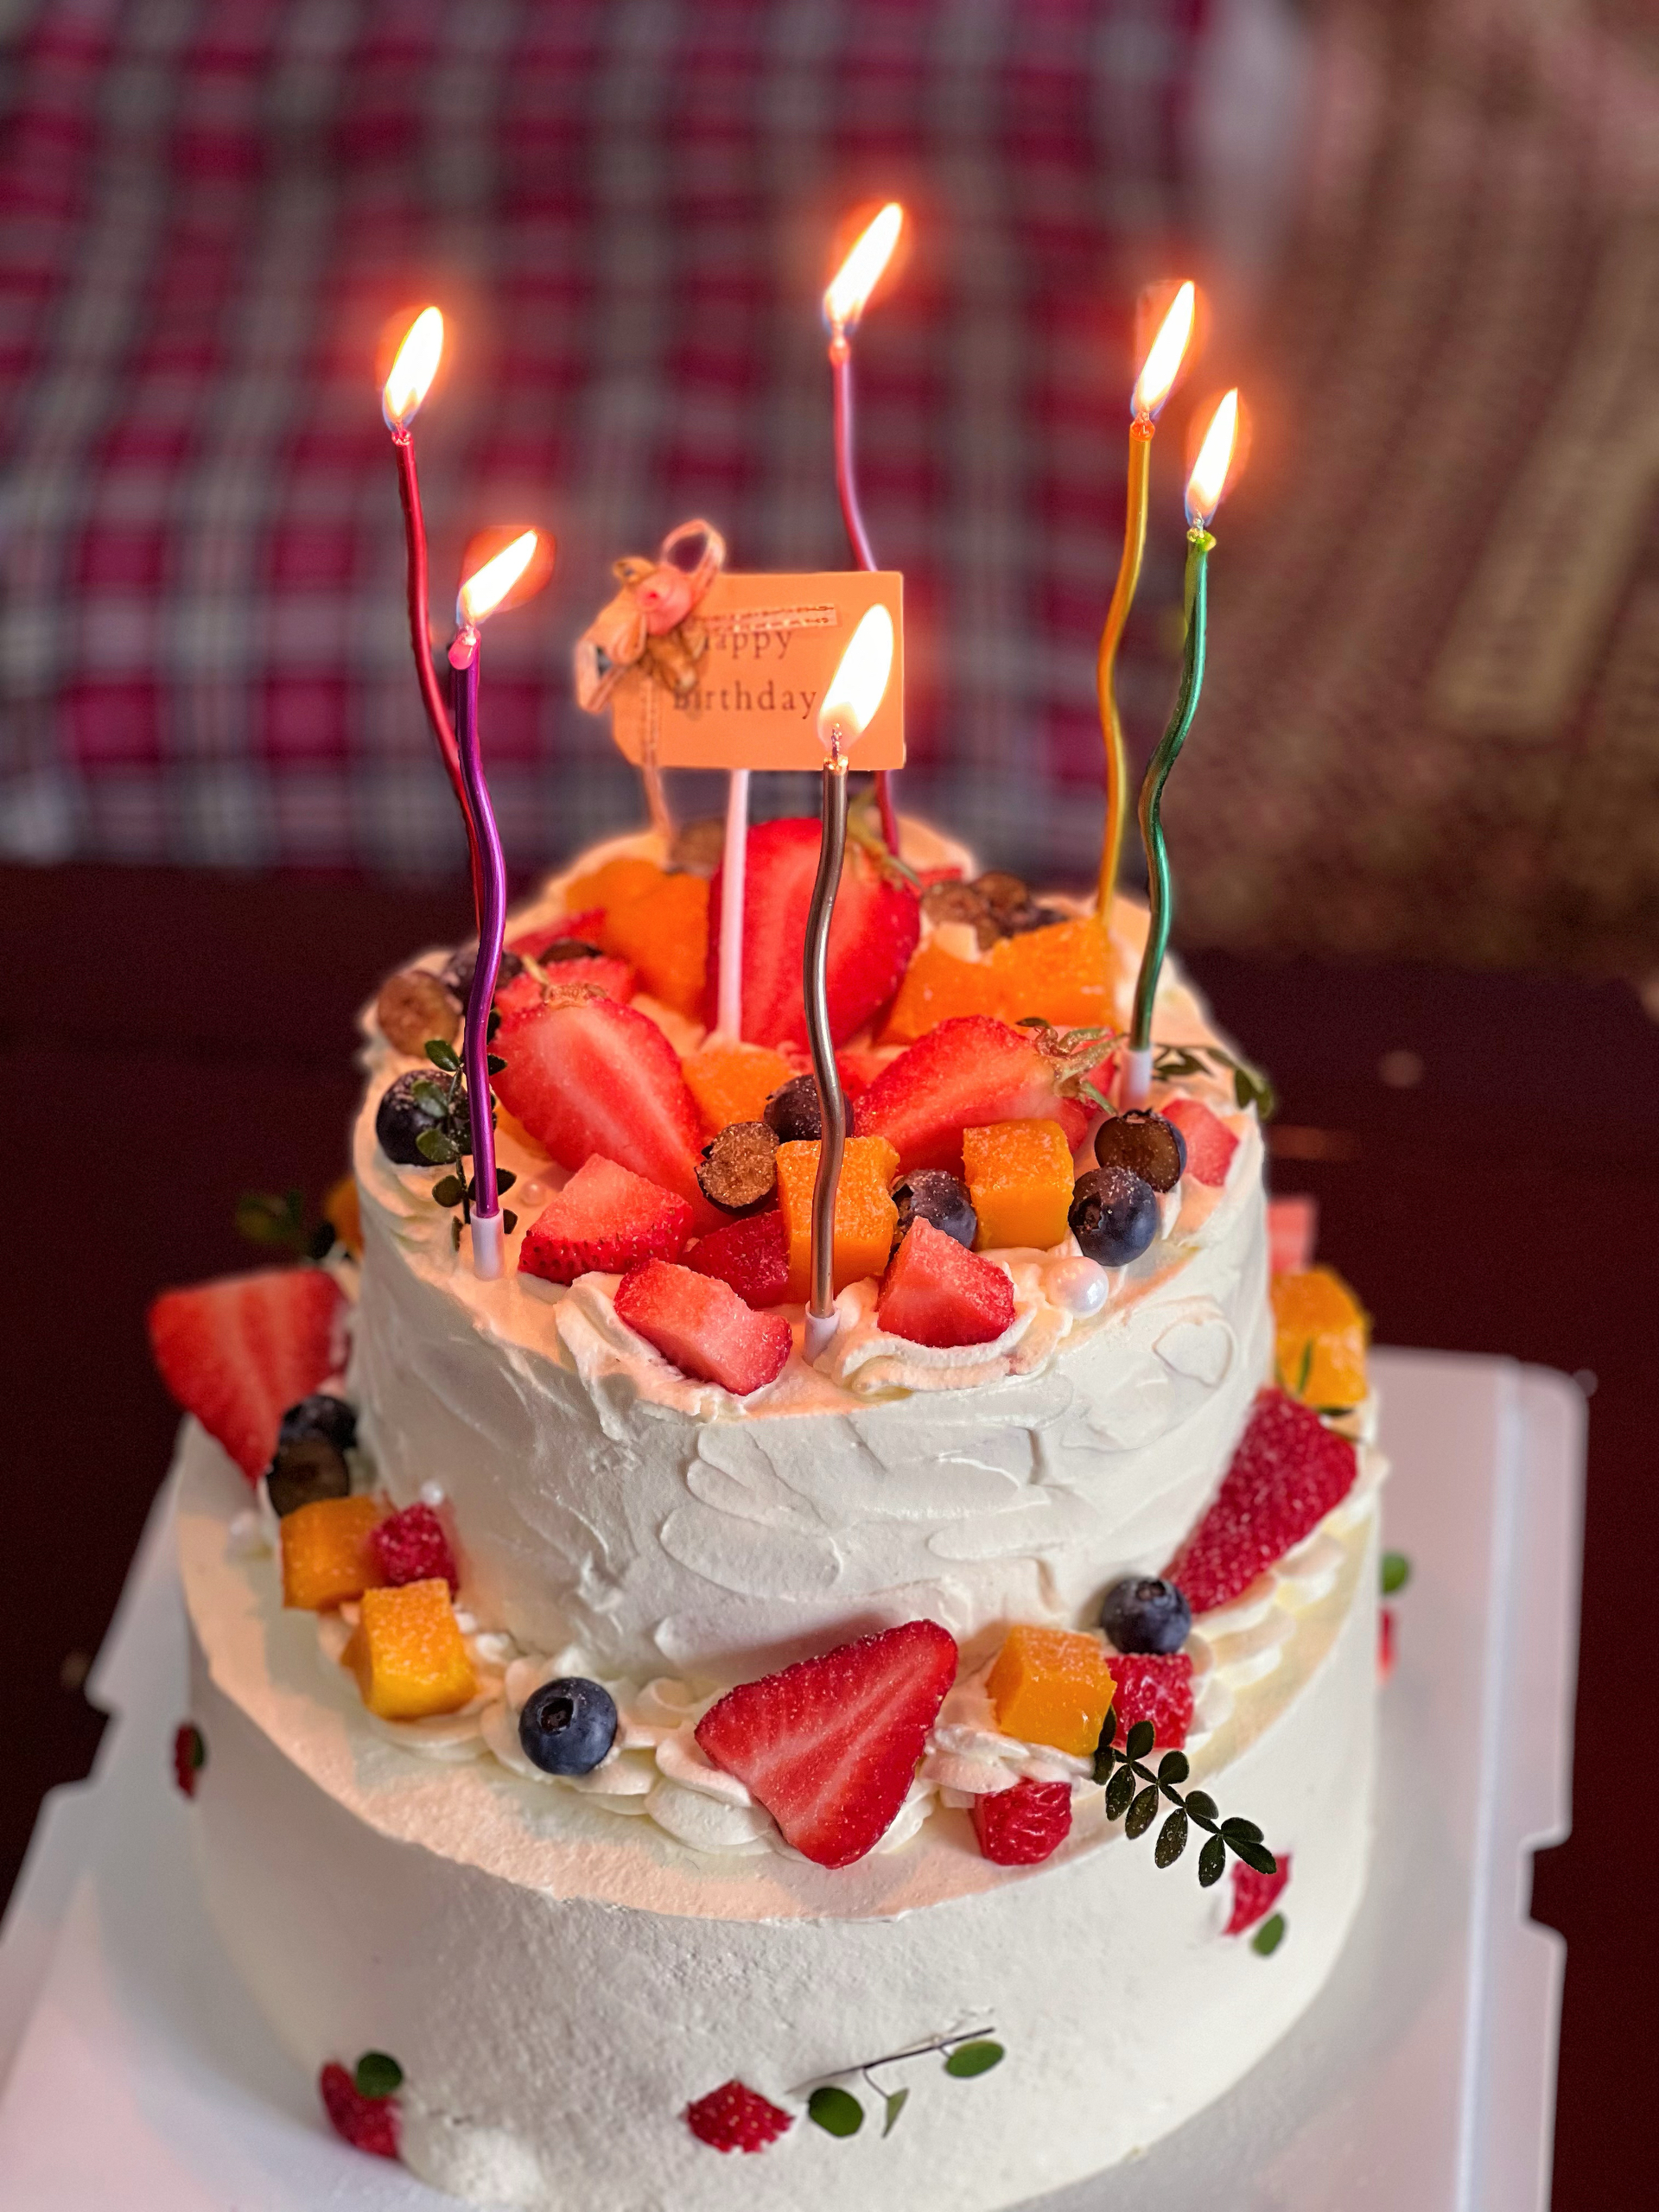 文芳的生日蛋糕